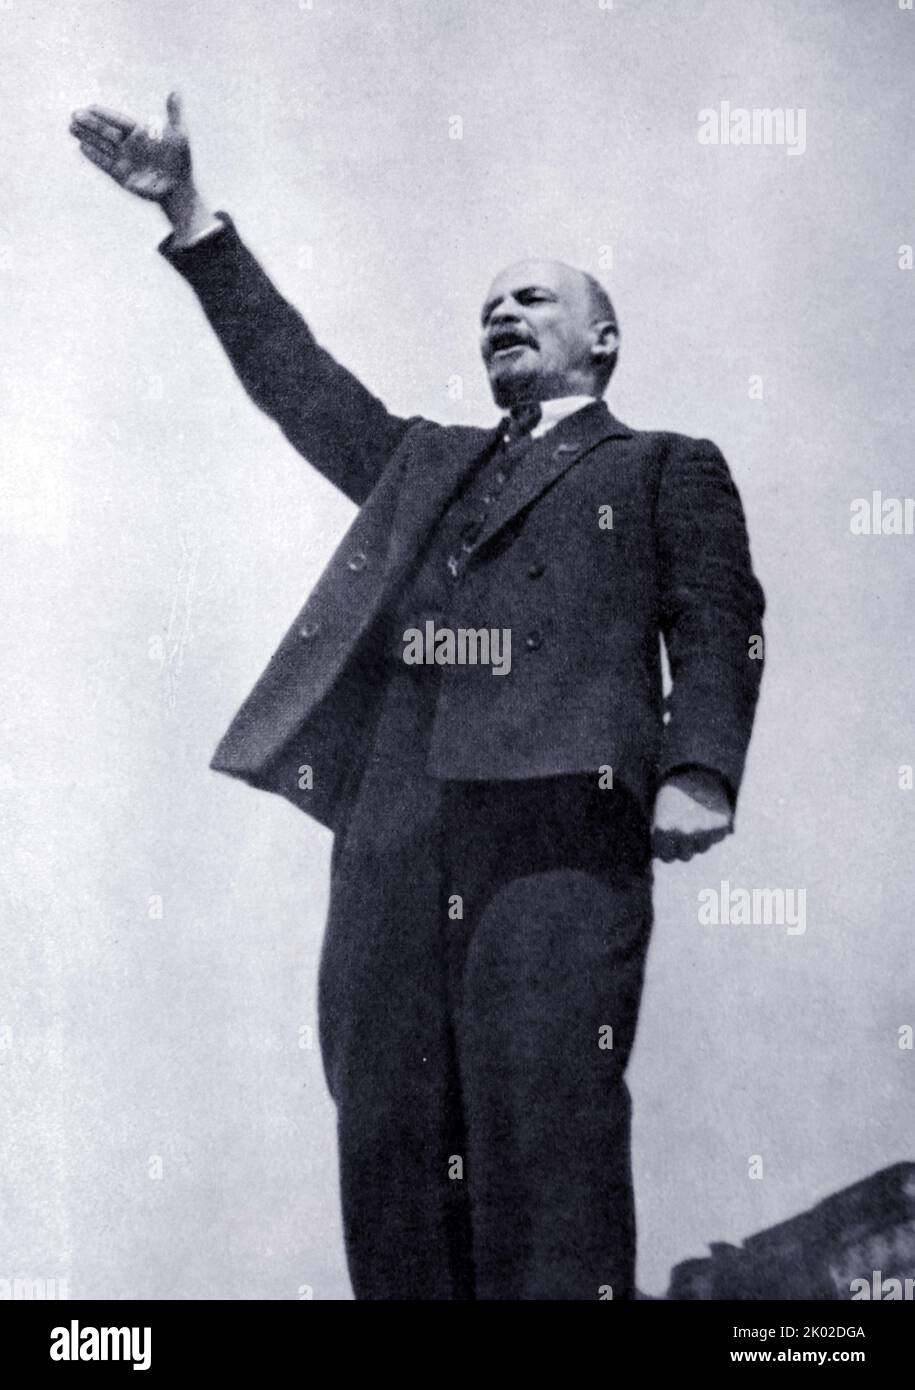 Vladimir Ilyich Ulyanov (Lenin, 22 aprile 1870 – 21 gennaio 1924) è stato un . Fu capo di governo della Russia sovietica dal 1917 al 1924 e dell'Unione sovietica dal 1922 al 1924. Foto Stock